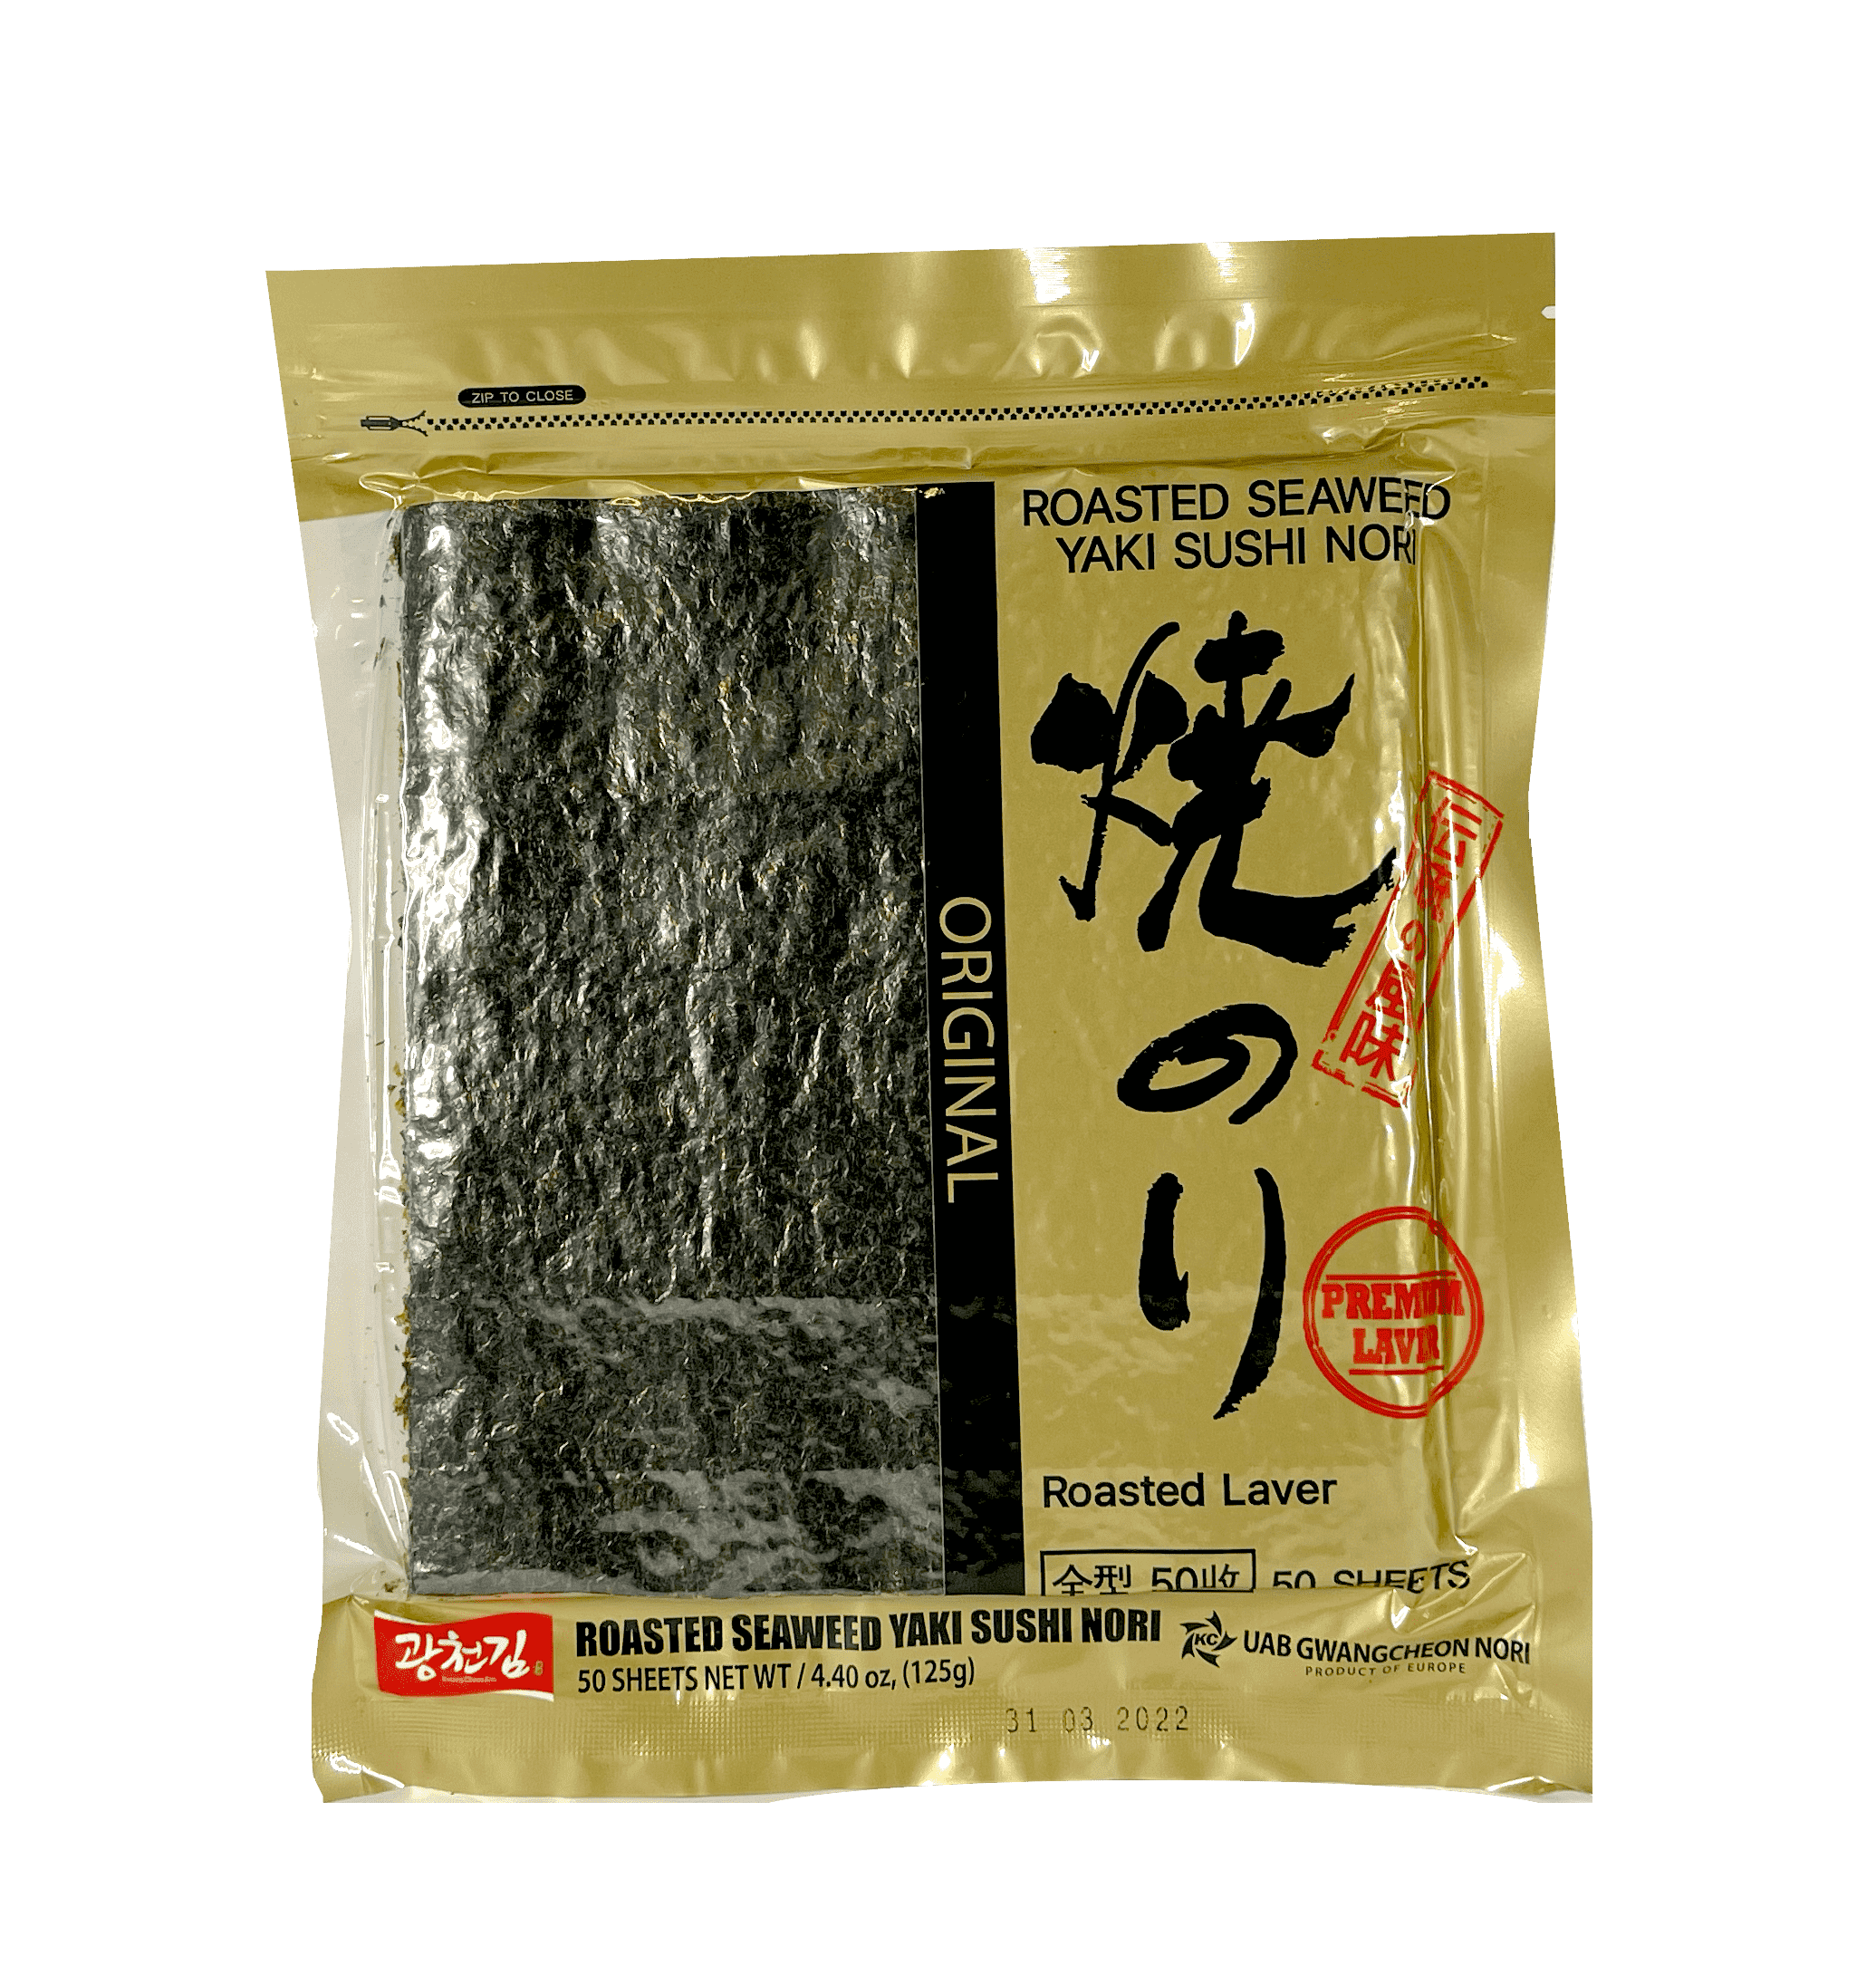 Roasted Seagrass Leaf / Nori Leaf 50sheets 125g Gwangcheon